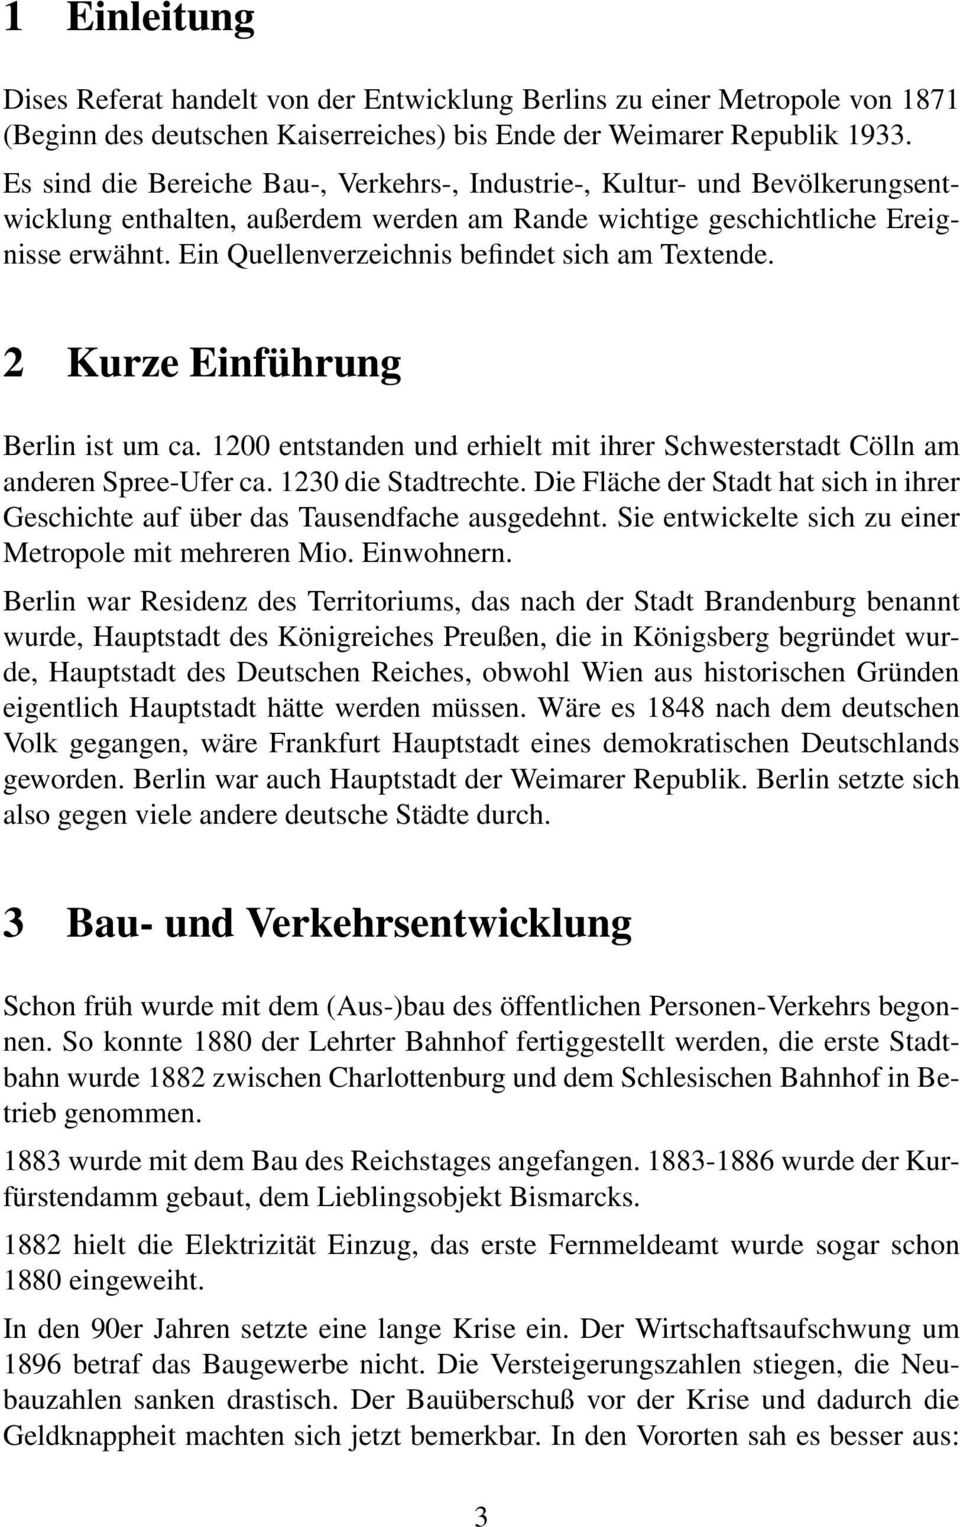 Ein Quellenverzeichnis befindet sich am Textende. 2 Kurze Einführung Berlin ist um ca. 1200 entstanden und erhielt mit ihrer Schwesterstadt Cölln am anderen Spree-Ufer ca. 1230 die Stadtrechte.